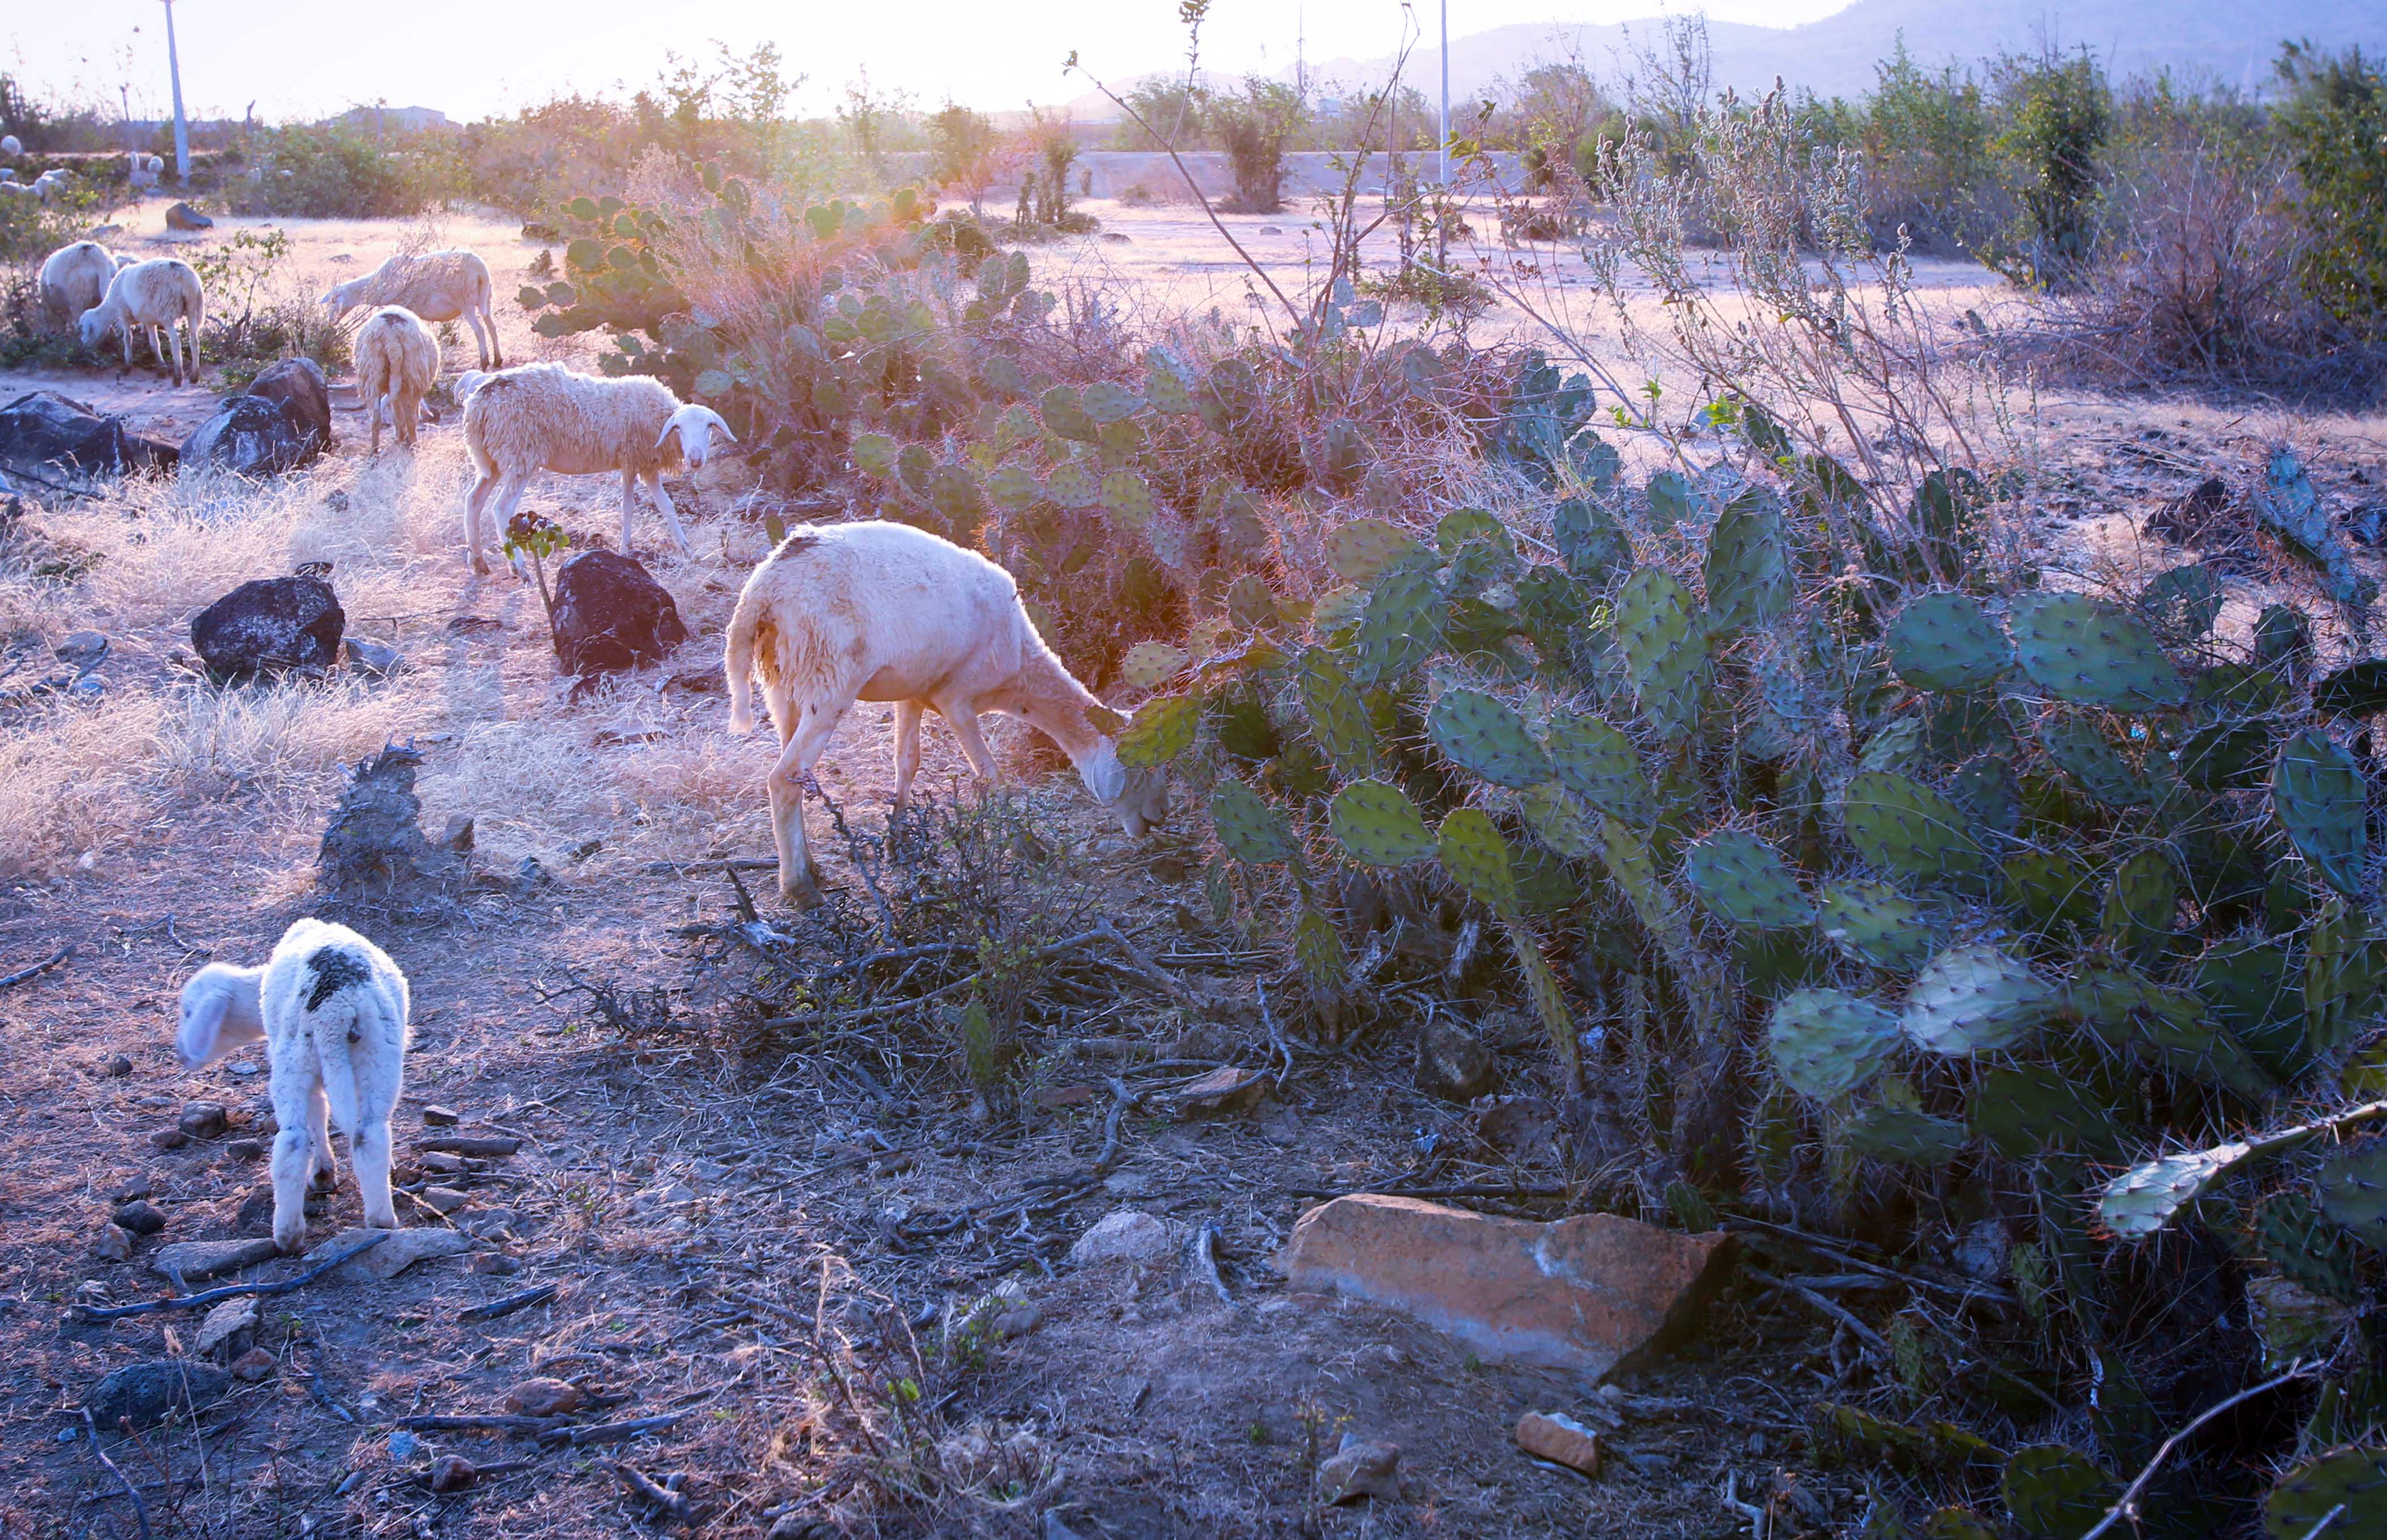 Với khí hậu khô hạn, xương rồng trở thành một loại thực phẩm dự trữ quý giá cho gia súc như cừu ở An Hòa, khi đốt hết gai nhọn. 